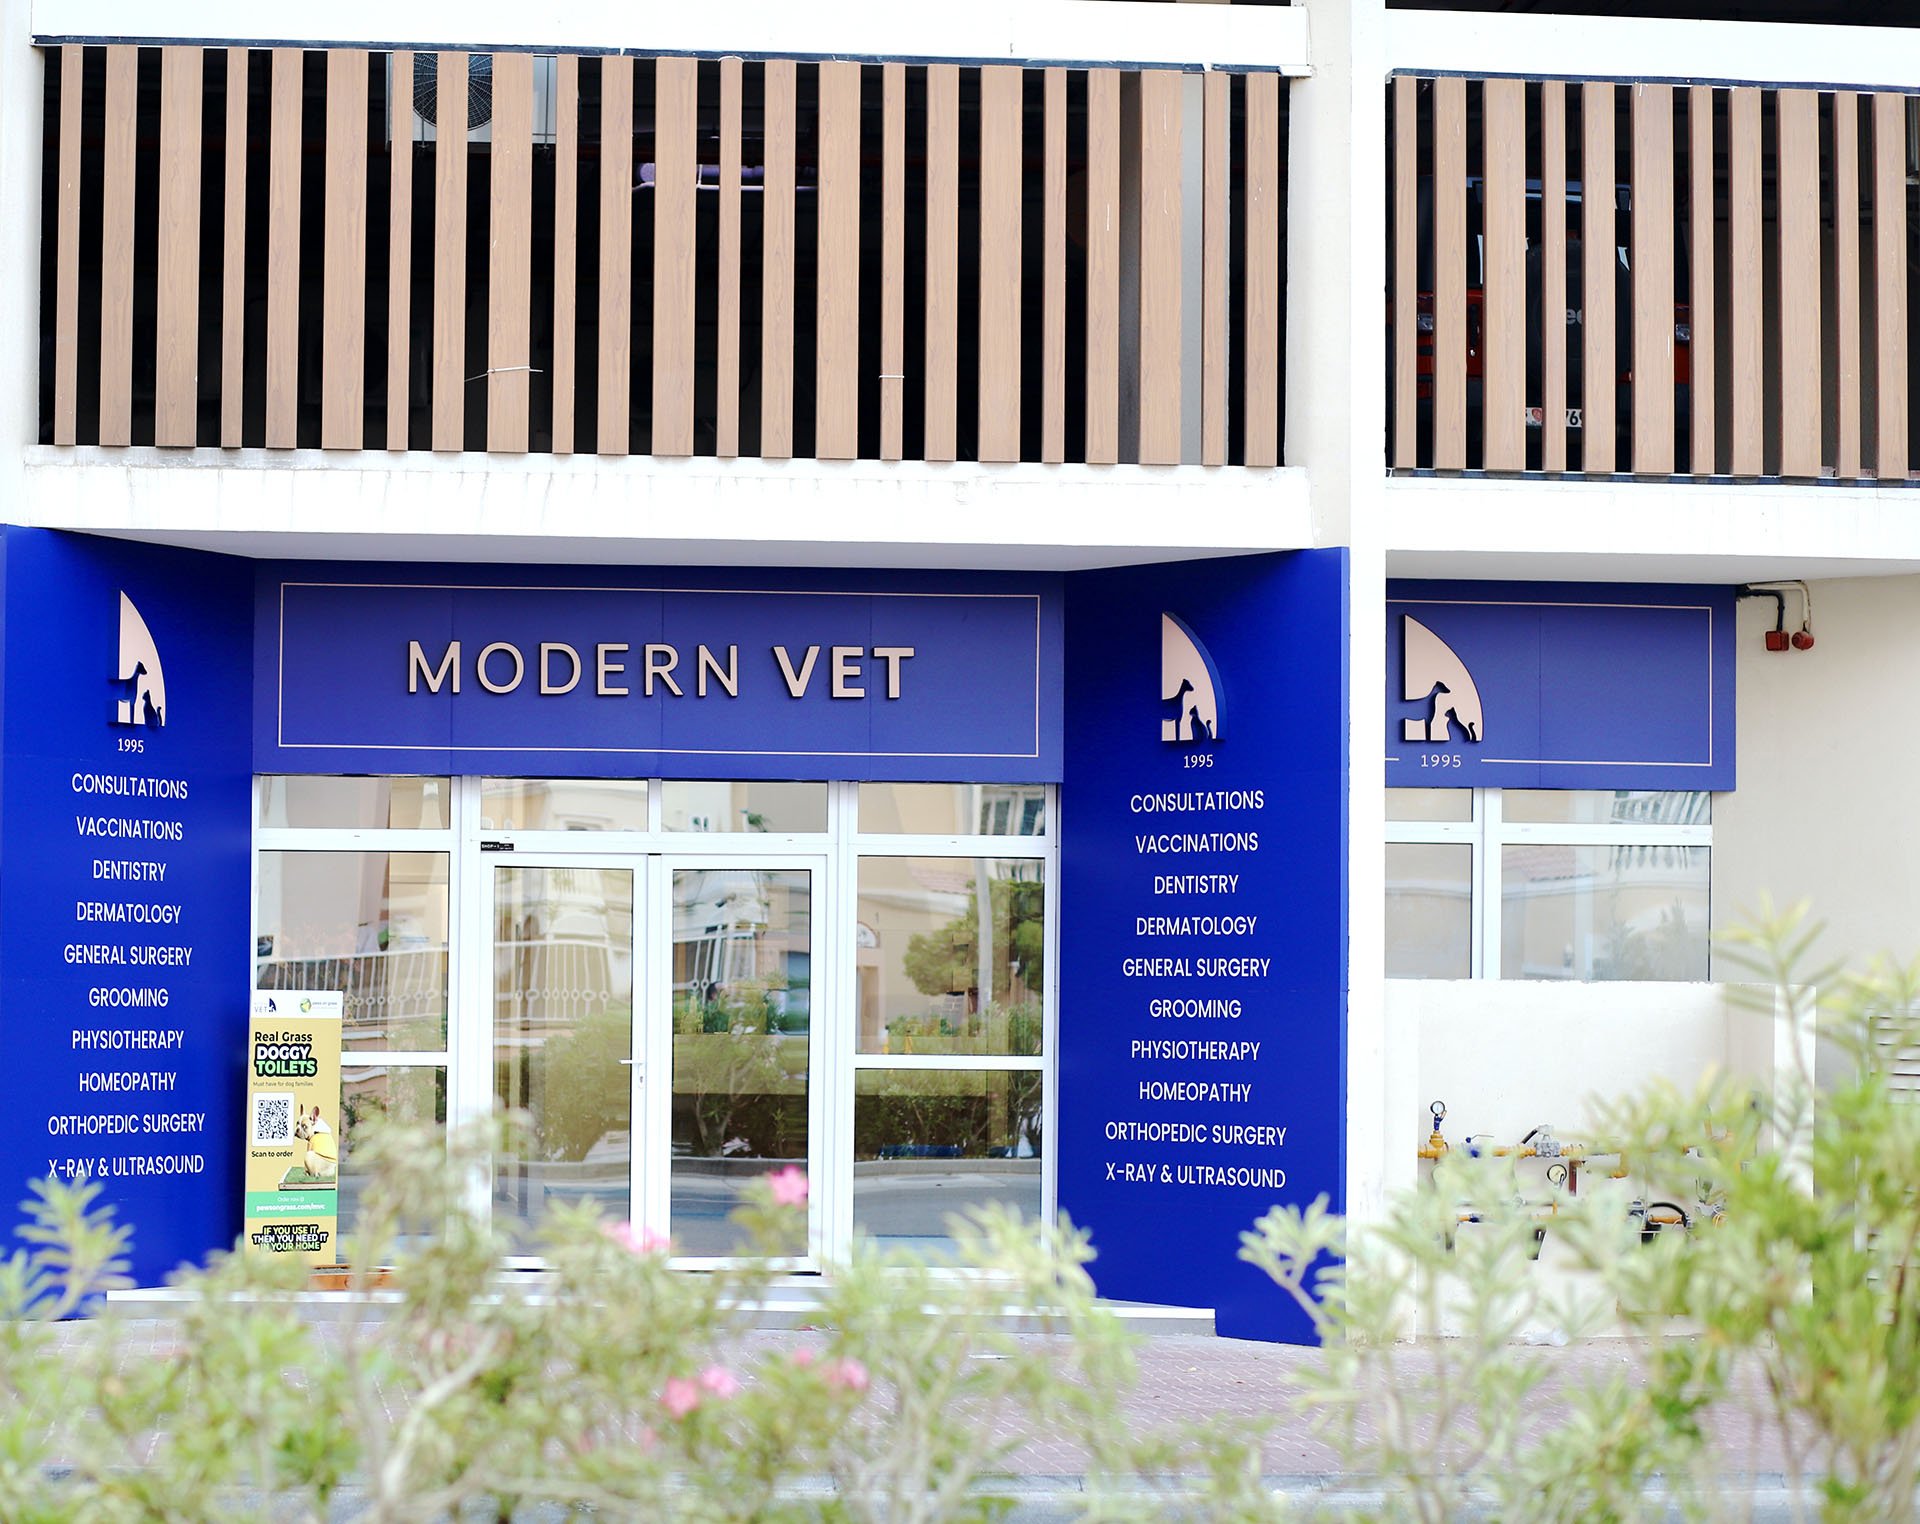 Modern Vet clinic front